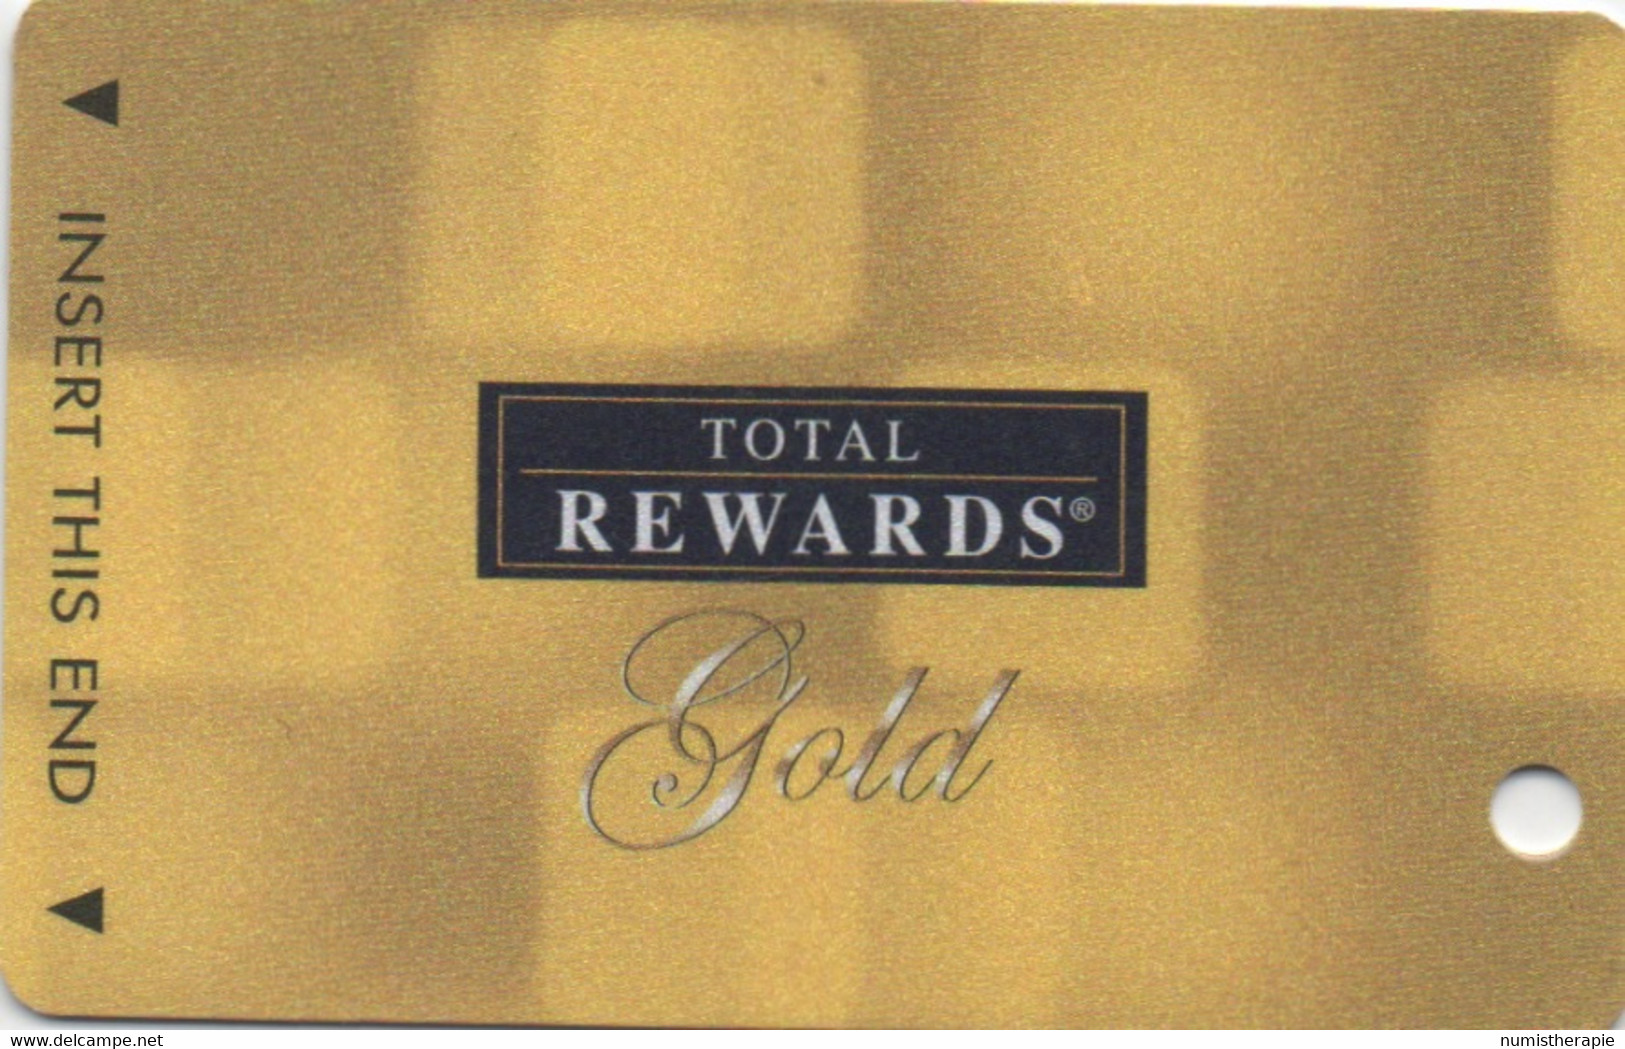 Carte Casino : Total Rewards ® Gold : 12 Casinos © 2009 - Cartes De Casino